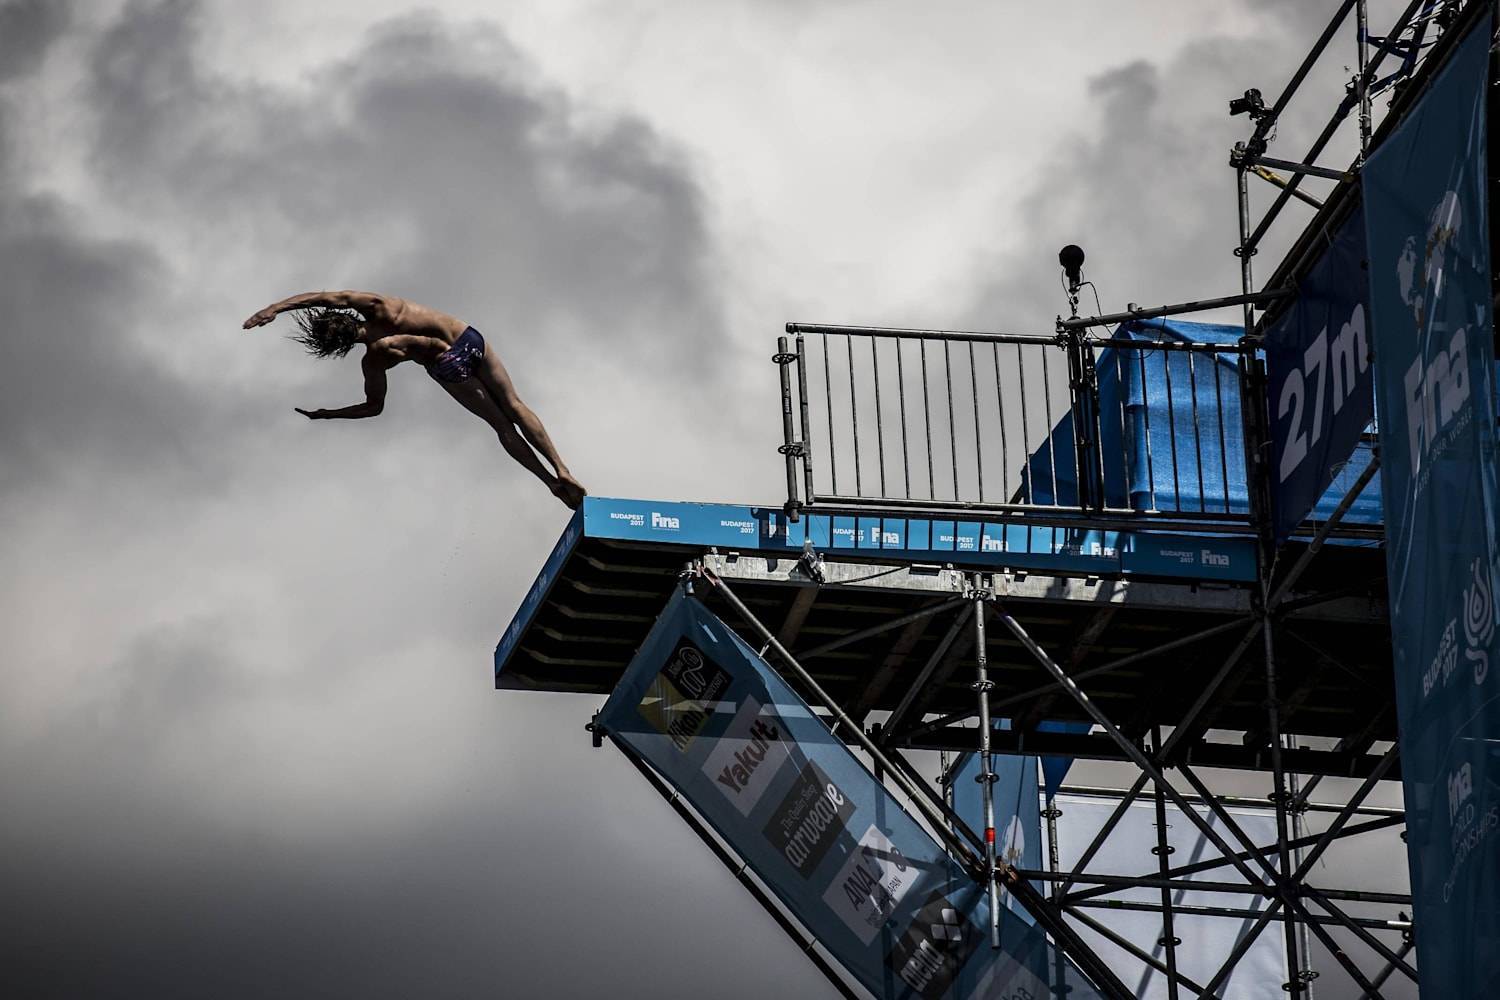 Прыжки в воду с большой высоты спорт. хай-дайвинг — спорт для отъявленных экстремалов. отличие хай дайвинга от прыжков в воду с вышки